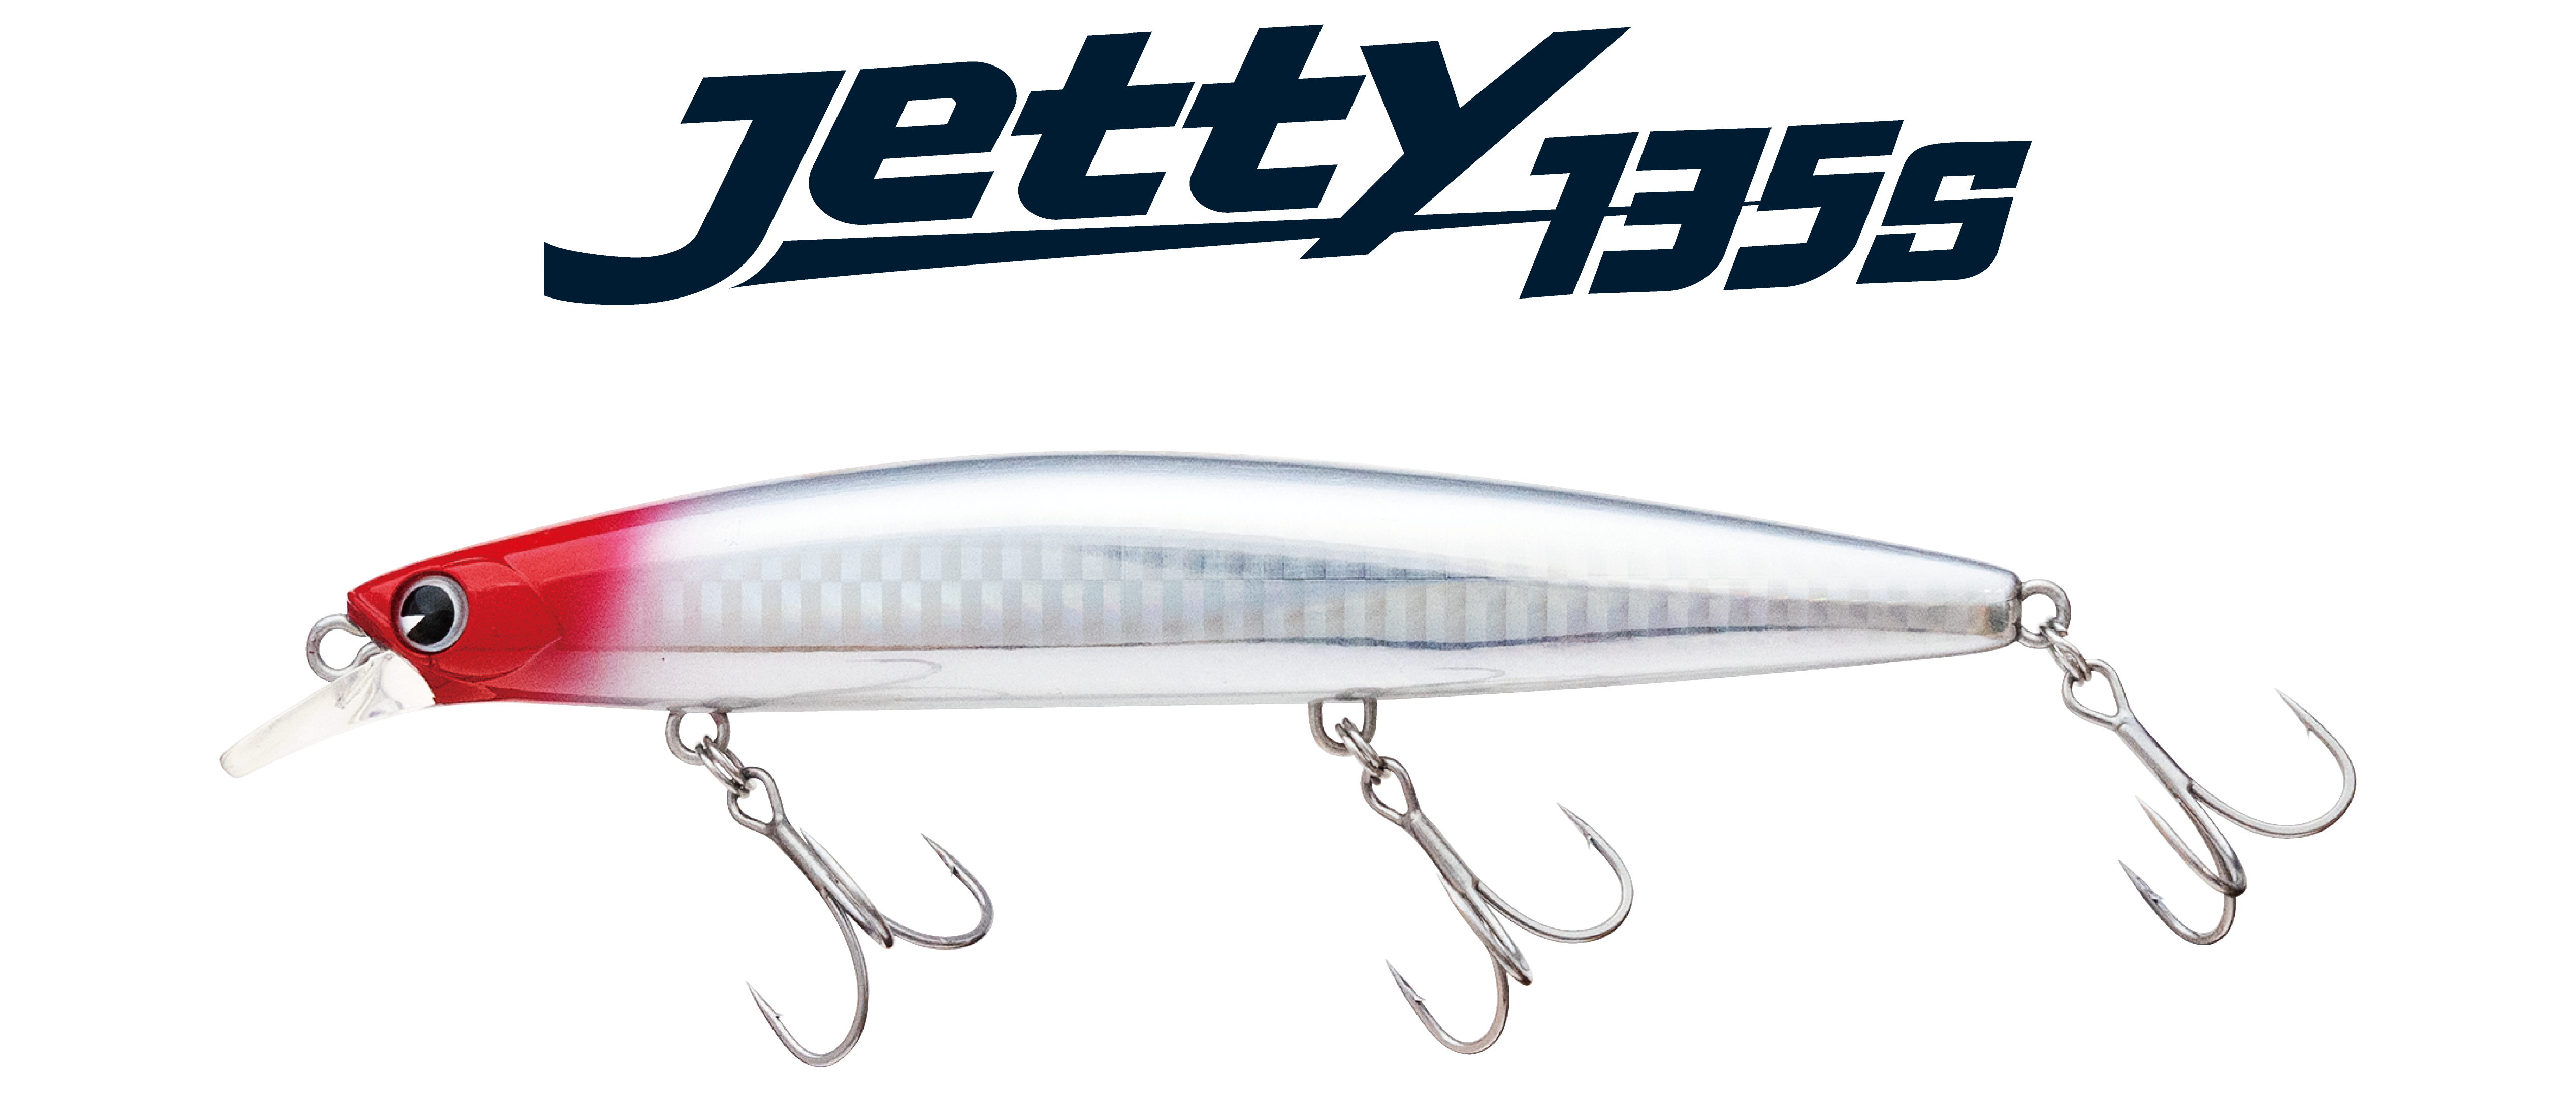 2020年4月10日誕生*［新製品］Jetty 135S* | ima 公式ブランドサイト 